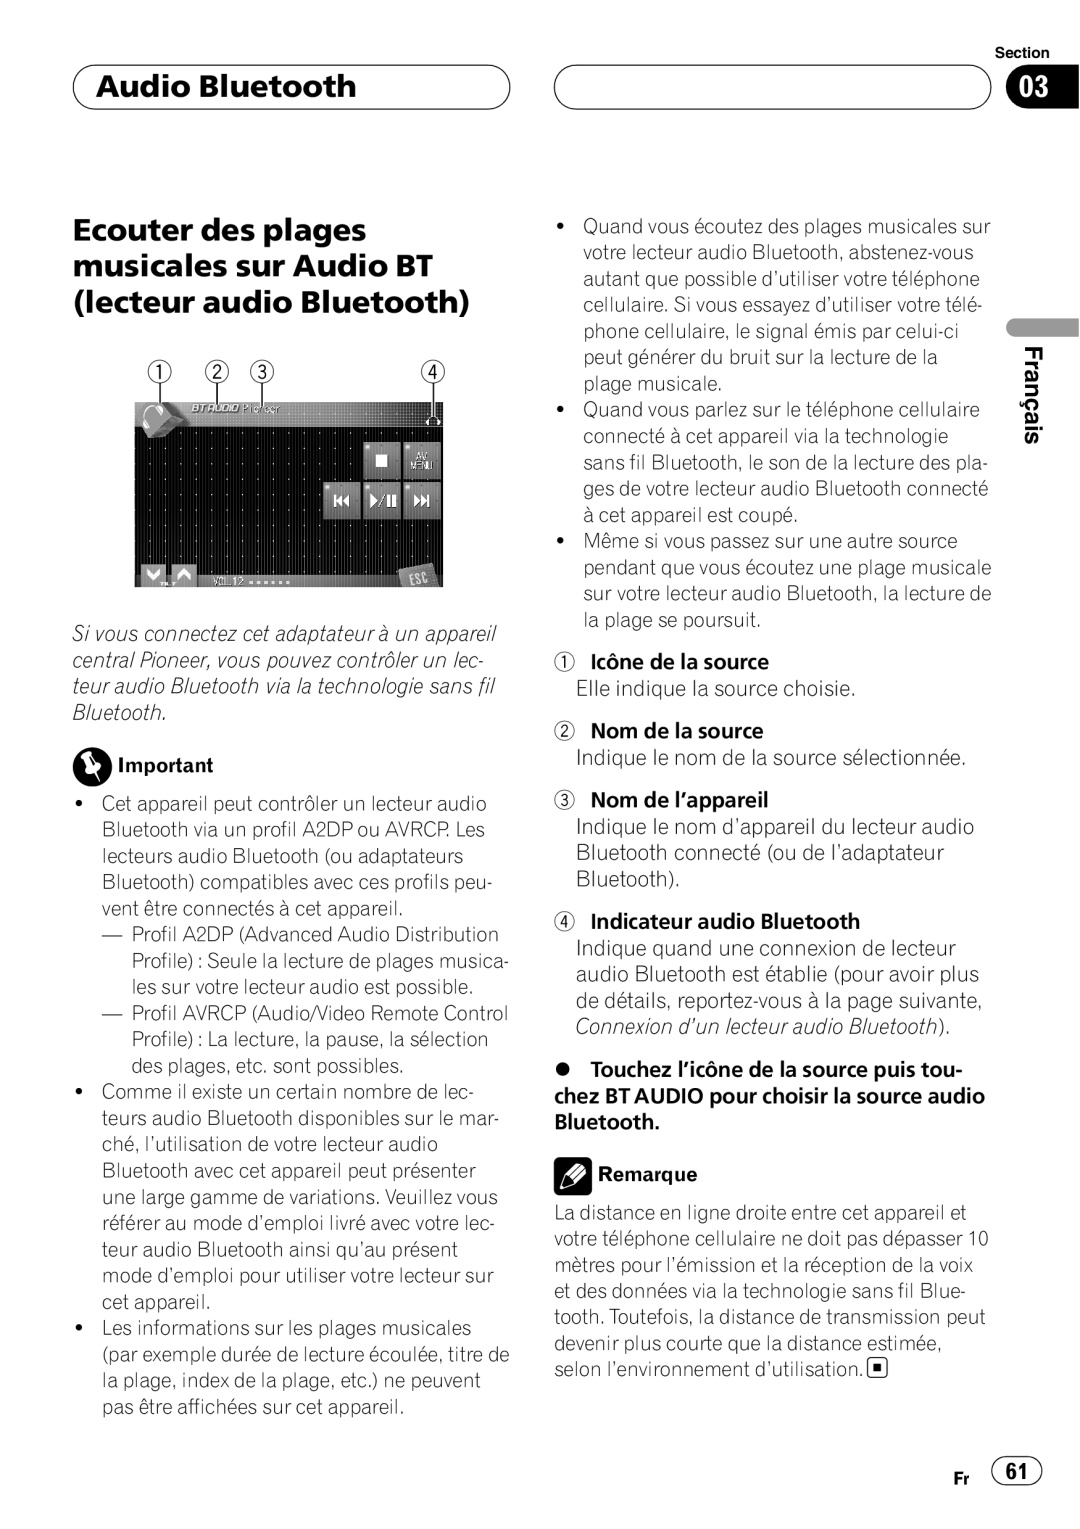 Pioneer CD-BTB200 owner manual Audio Bluetooth, Ecouter des plages musicales sur Audio BT lecteur audio Bluetooth, Français 